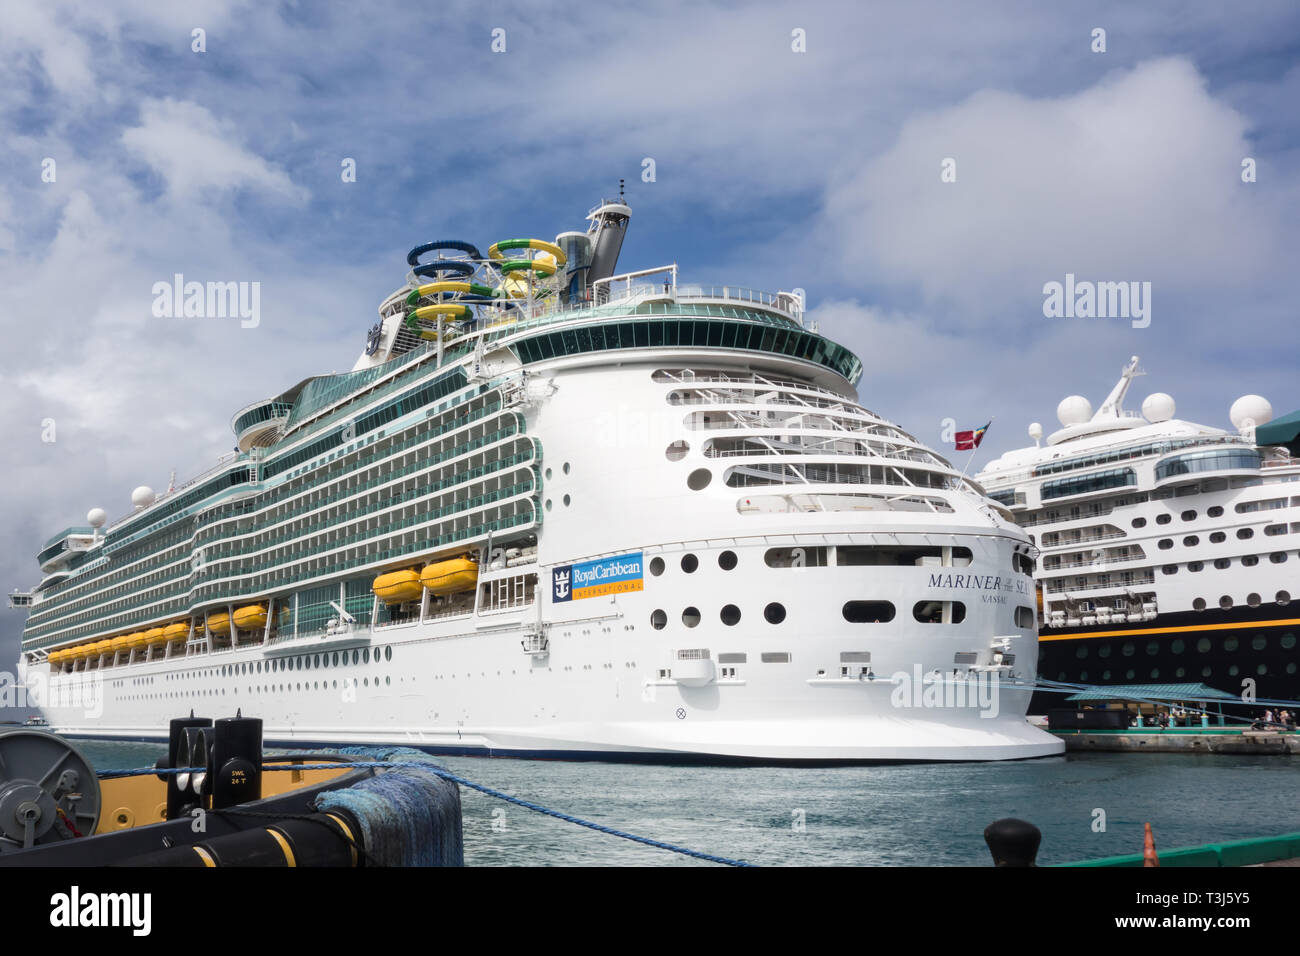 Mariner of the Seas appartenant à Royal Caribbean International est amarré au port de croisière de Nassau Bahamas en terminal. Banque D'Images